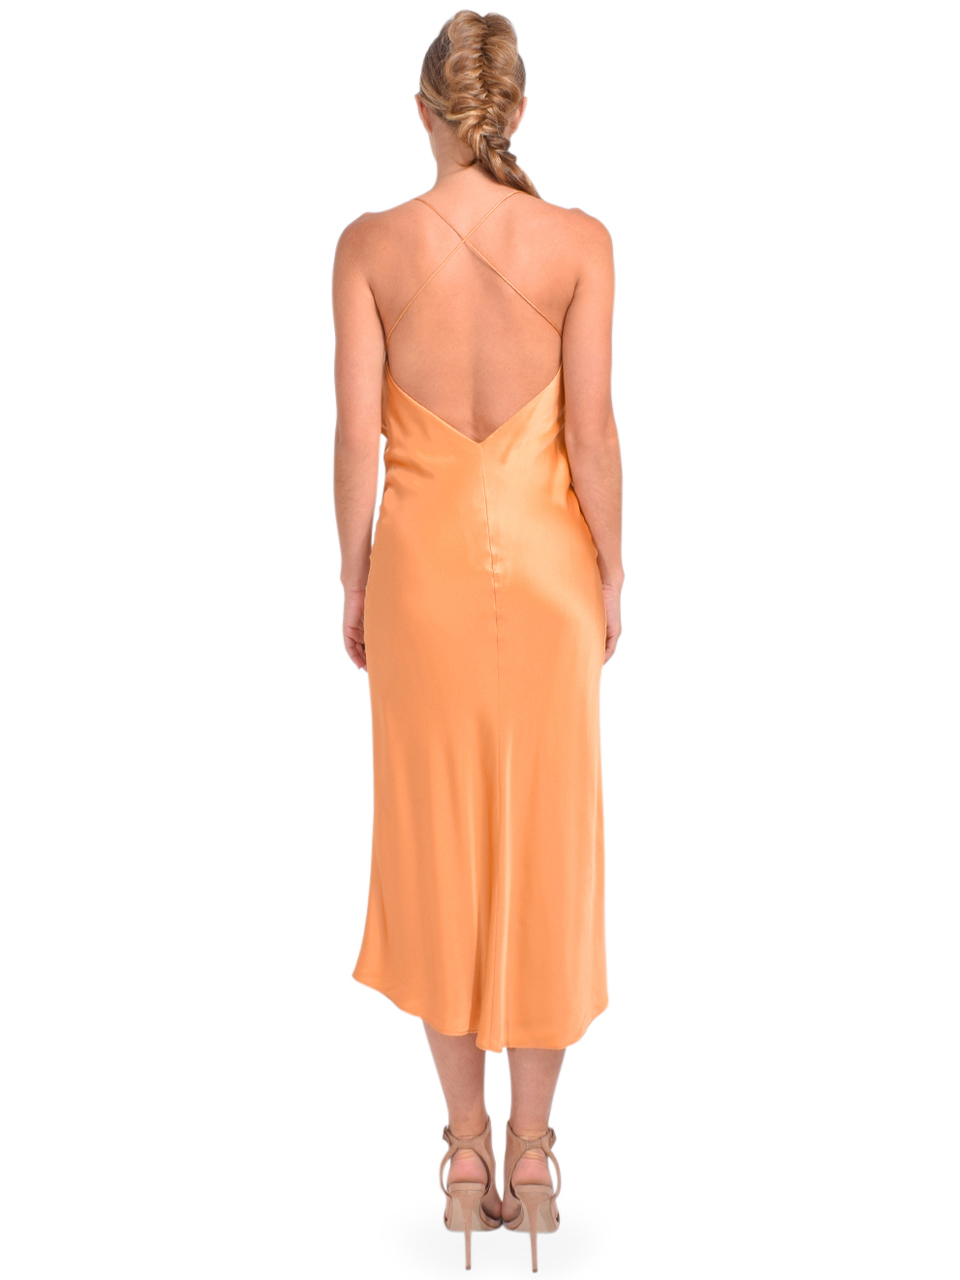 Michelle Mason Ruffle Cowl Neck Midi Dress in Apricot Back View 